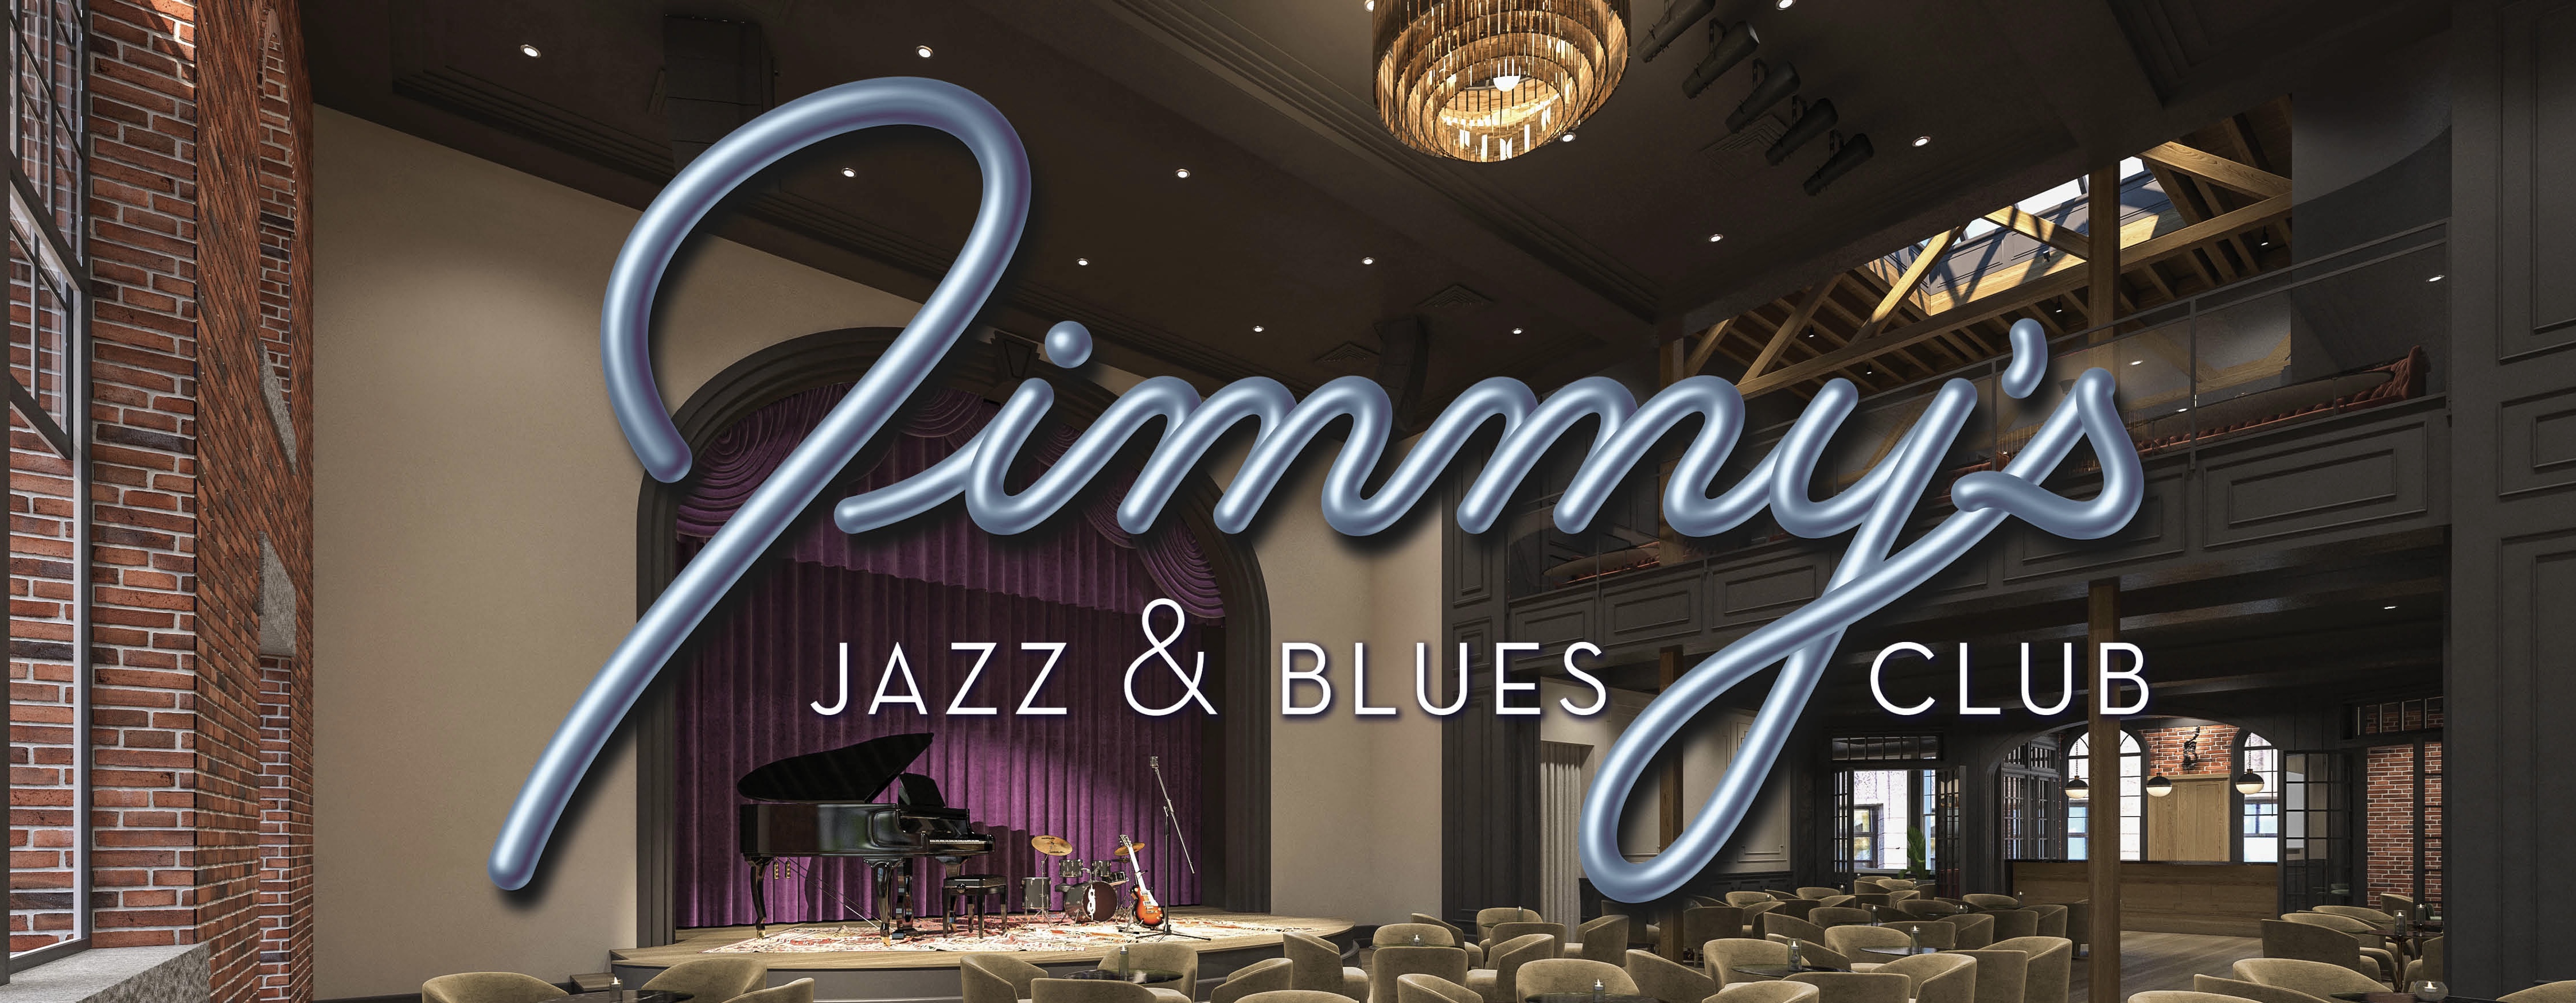 Jimmy's Jazz & Blues Club Main Stage